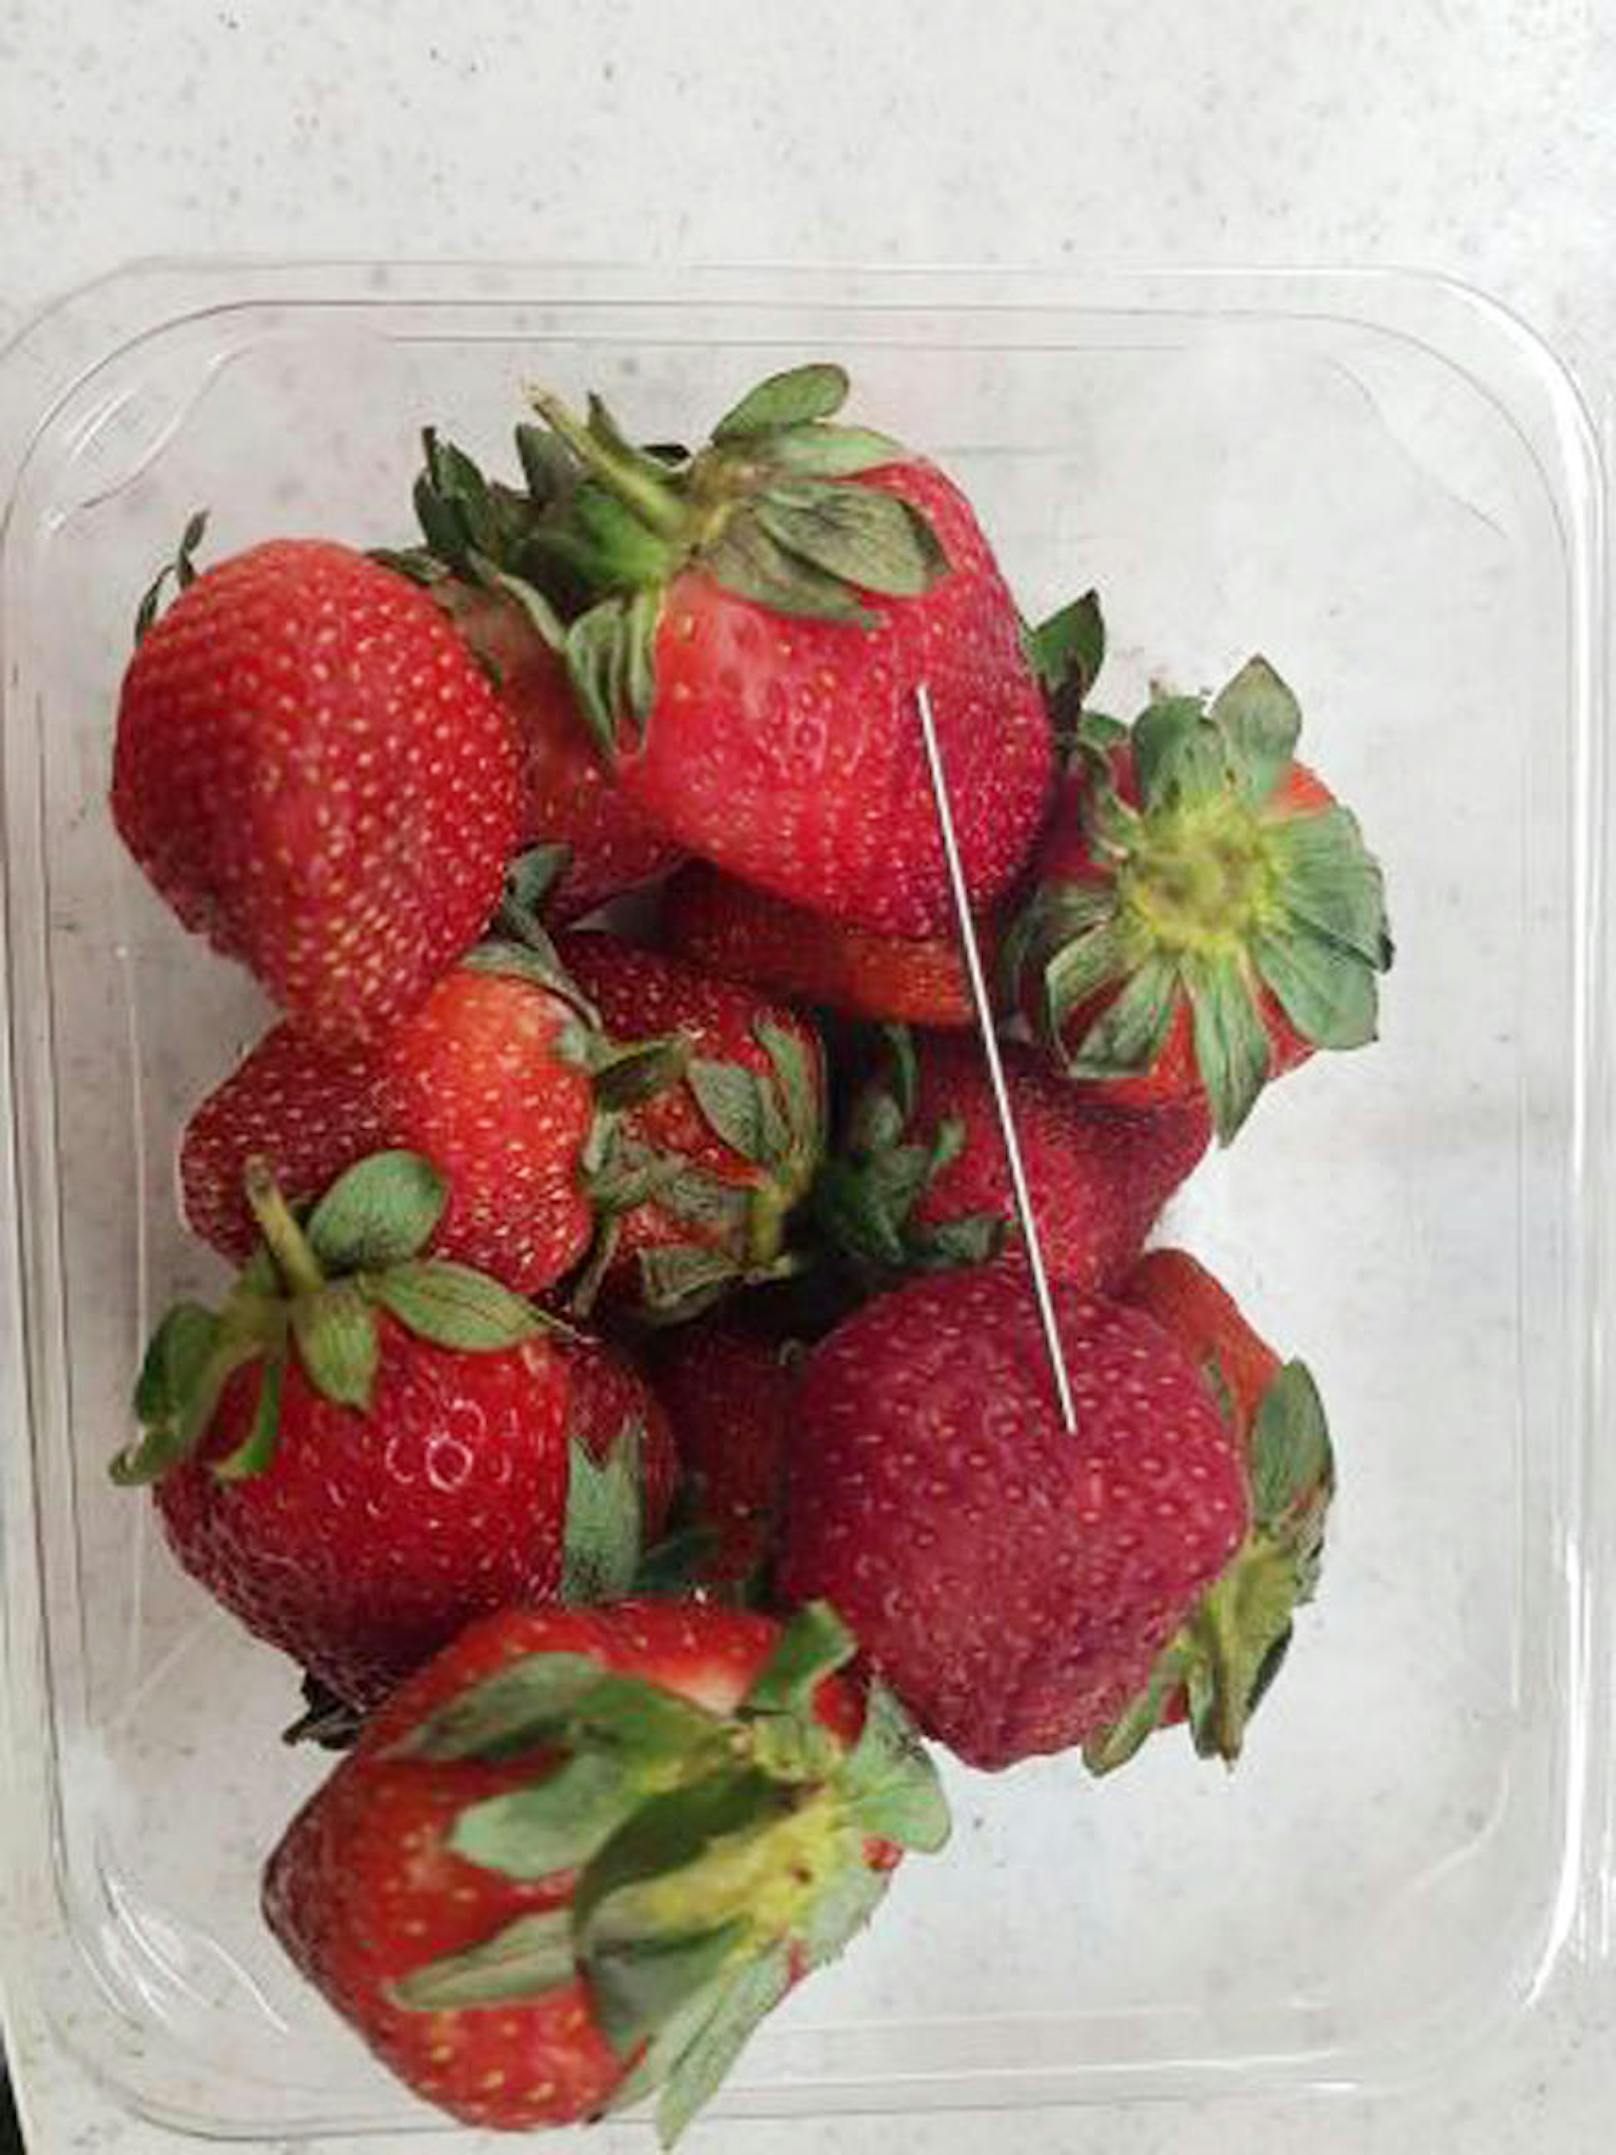 Die Polizei veröffentlichte dieses  Bild im Zusammenhang mit Stecknadelfunden in Erdbeeren in einem Supermarkt.